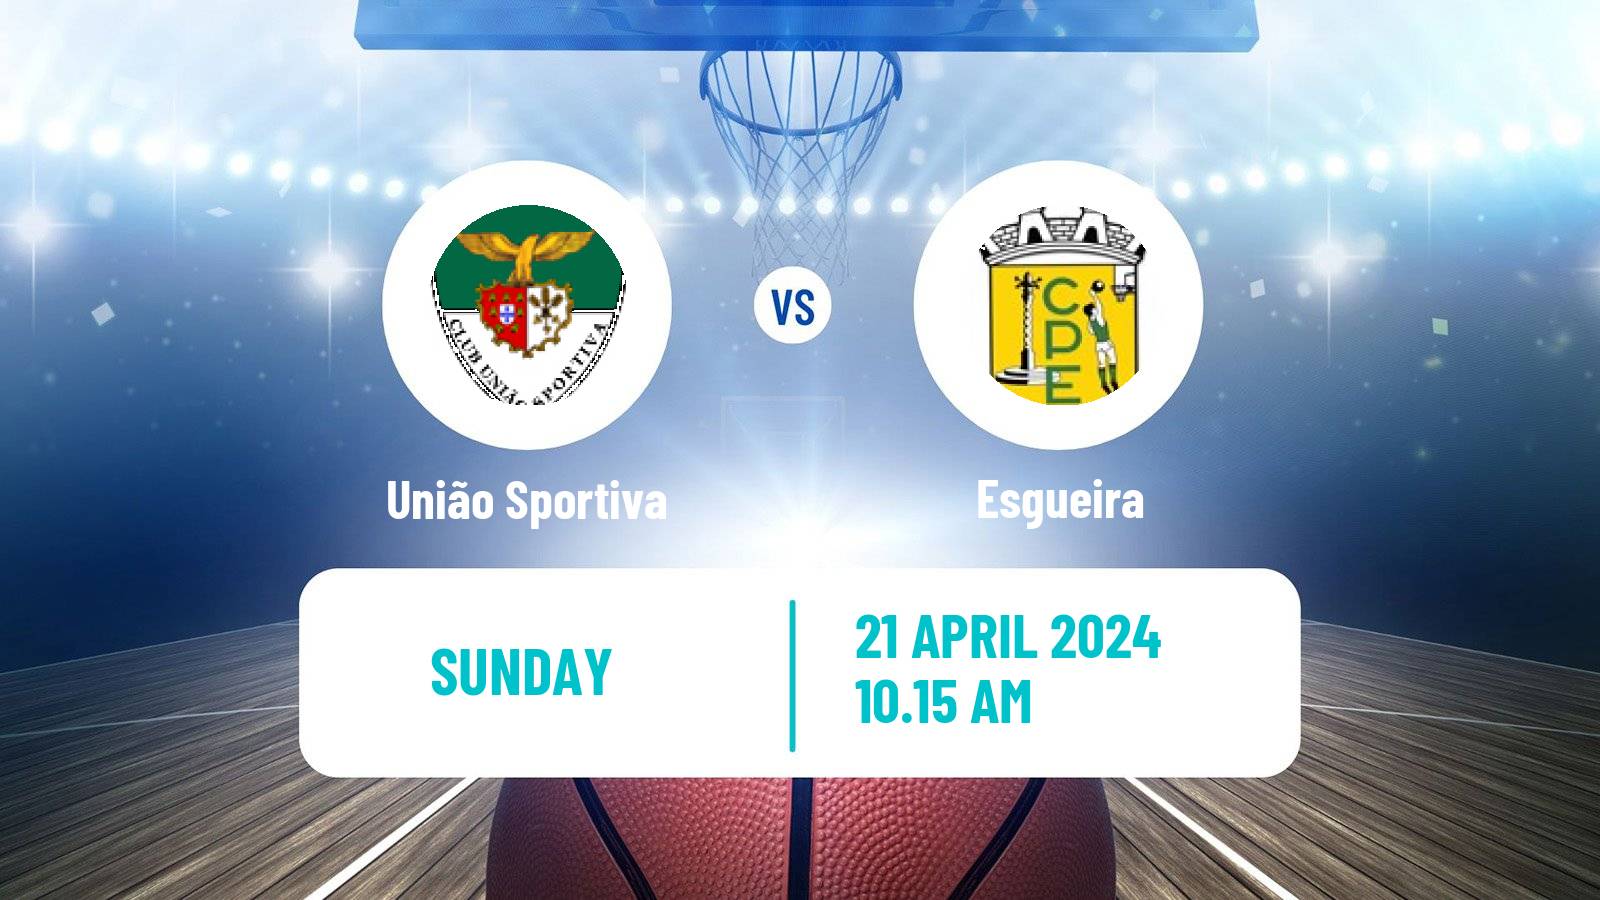 Basketball Portuguese LFB União Sportiva - Esgueira